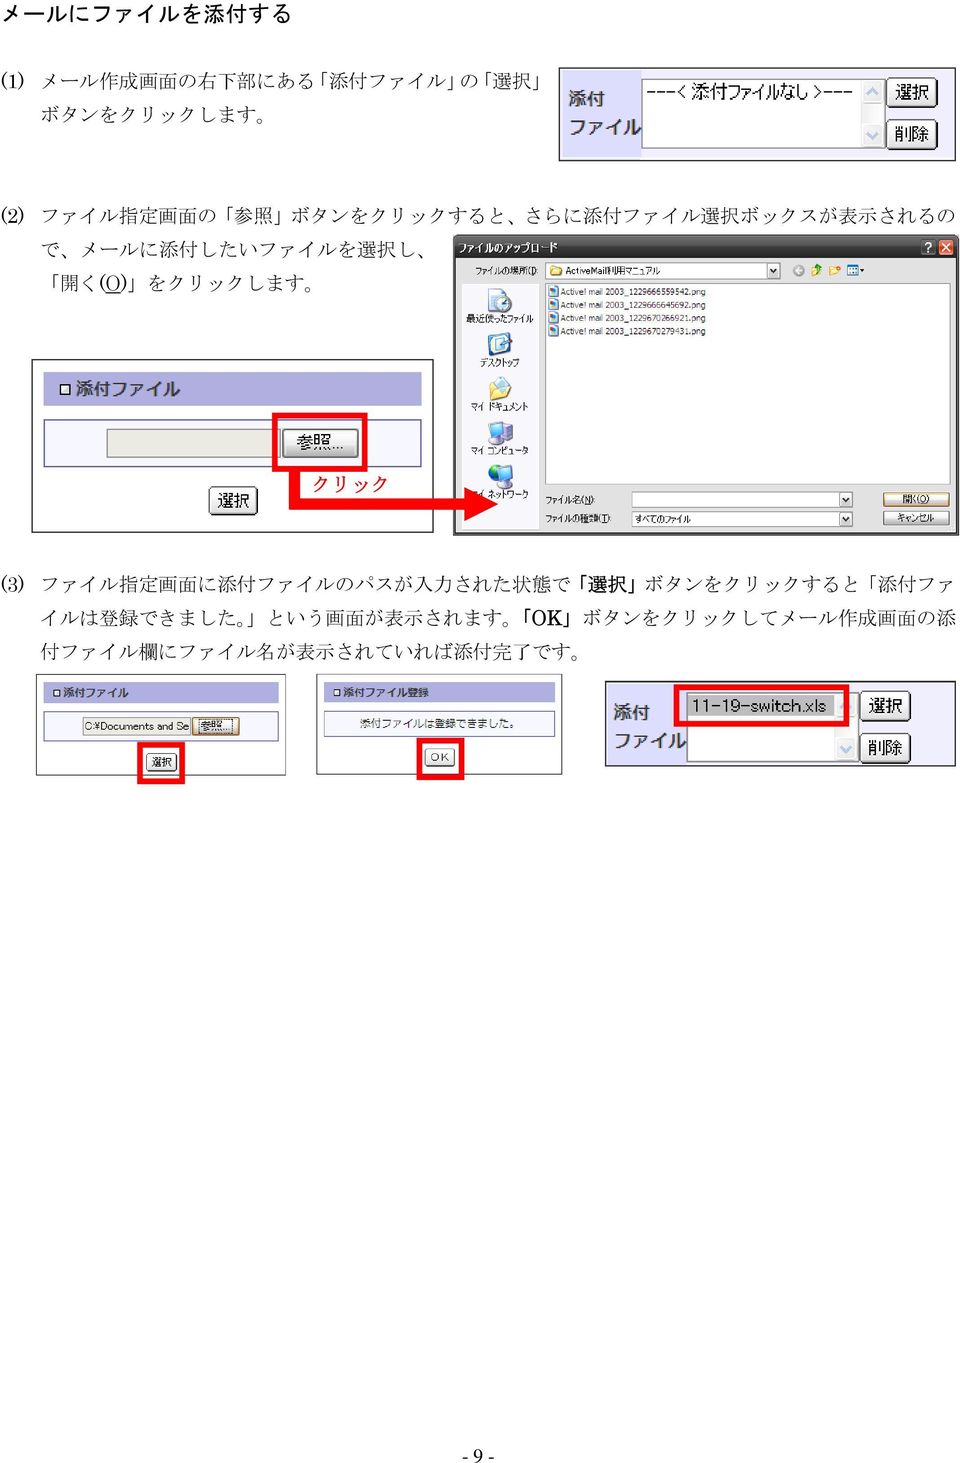 クリック (3) ファイル 指 定 画 面 に 添 付 ファイルのパスが 入 力 された 状 態 で 選 択 ボタンをクリックすると 添 付 ファ イルは 登 録 できました